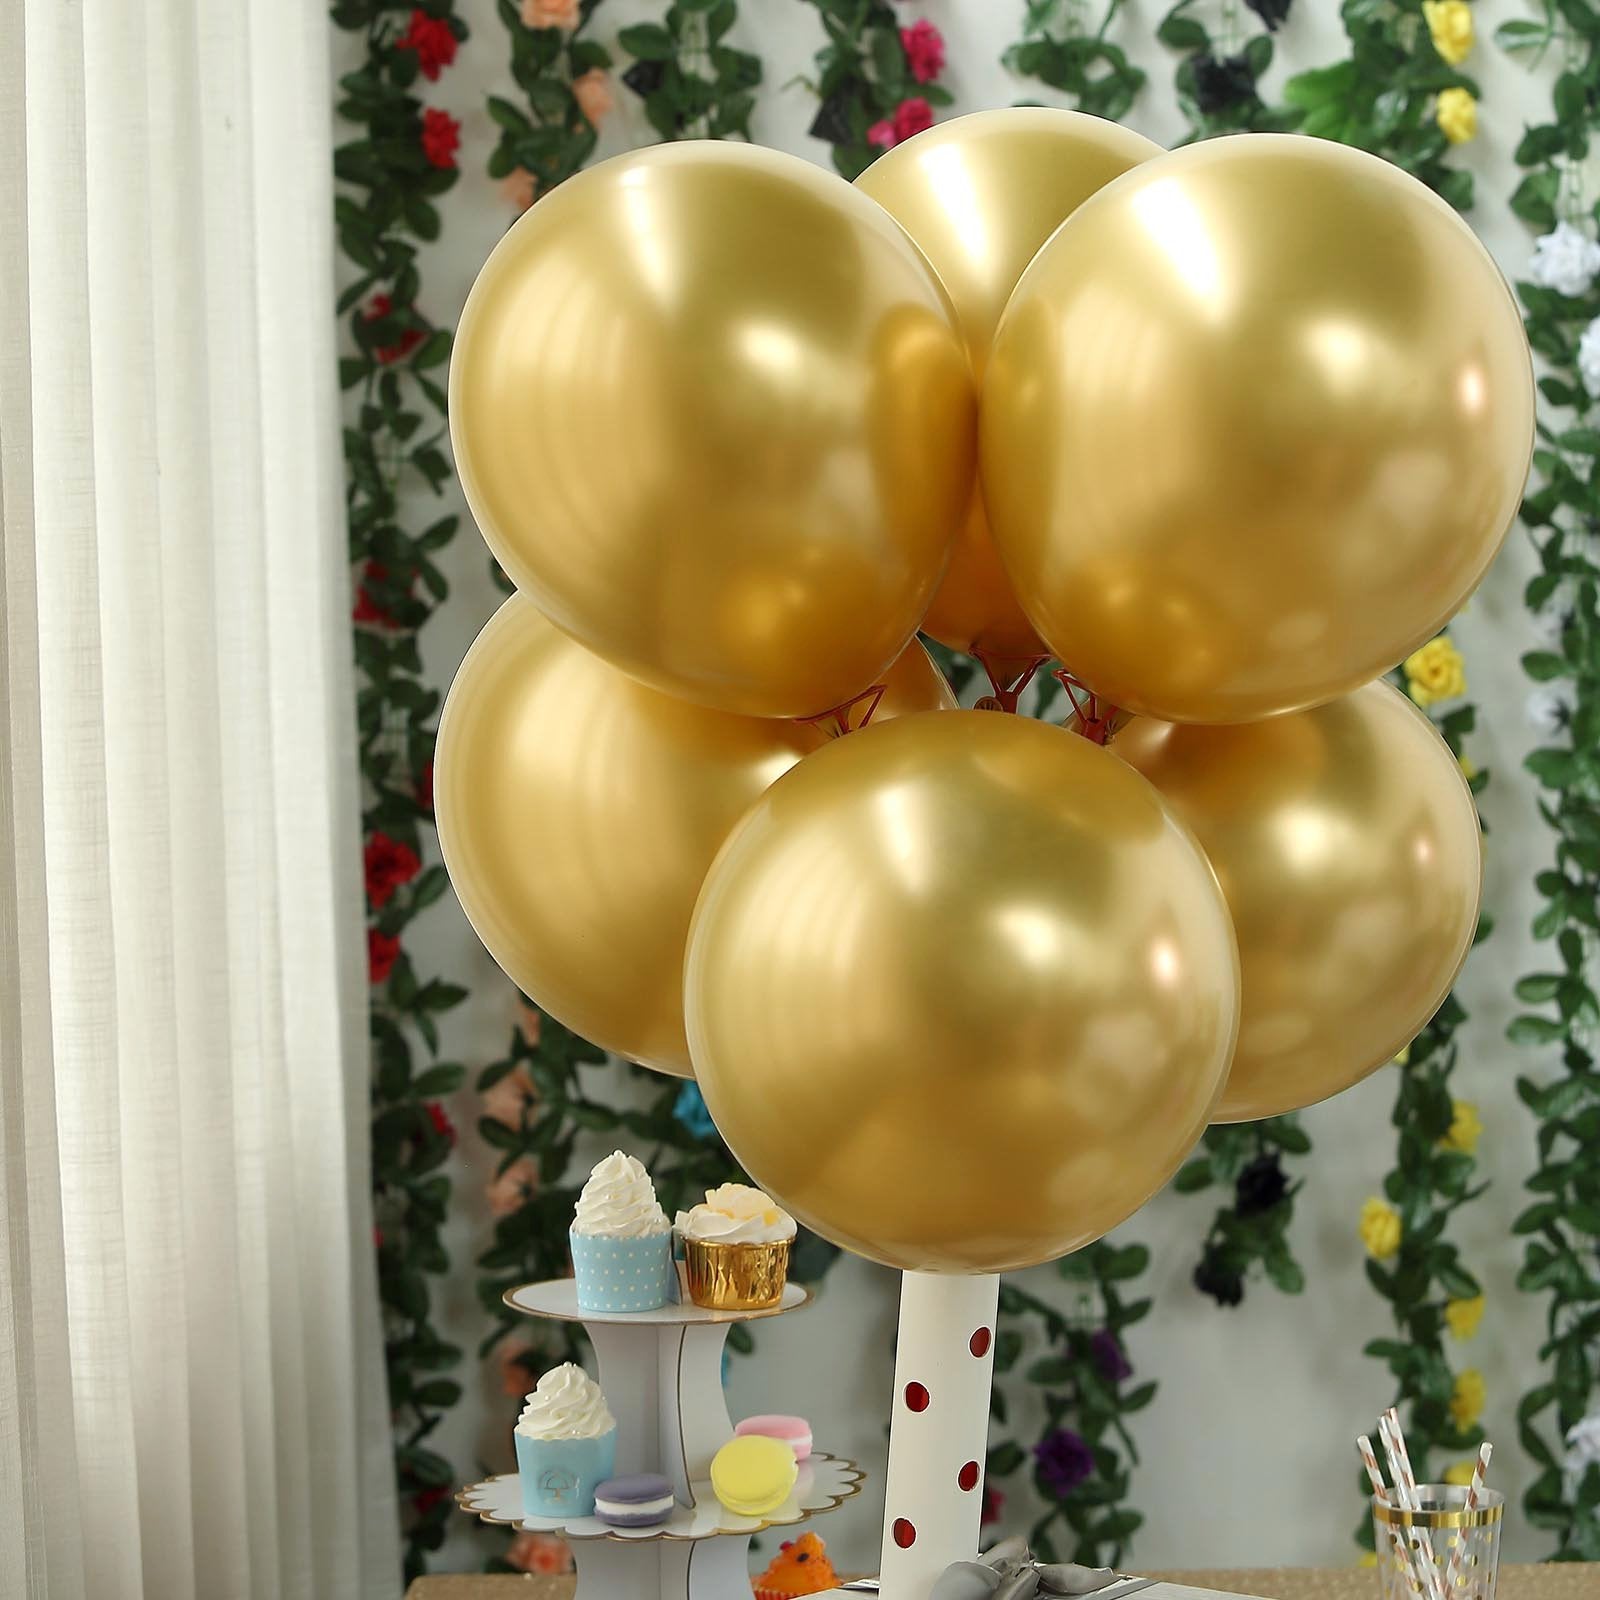 Generic 50 ballons décoration anniversaire chromé gold à prix pas cher